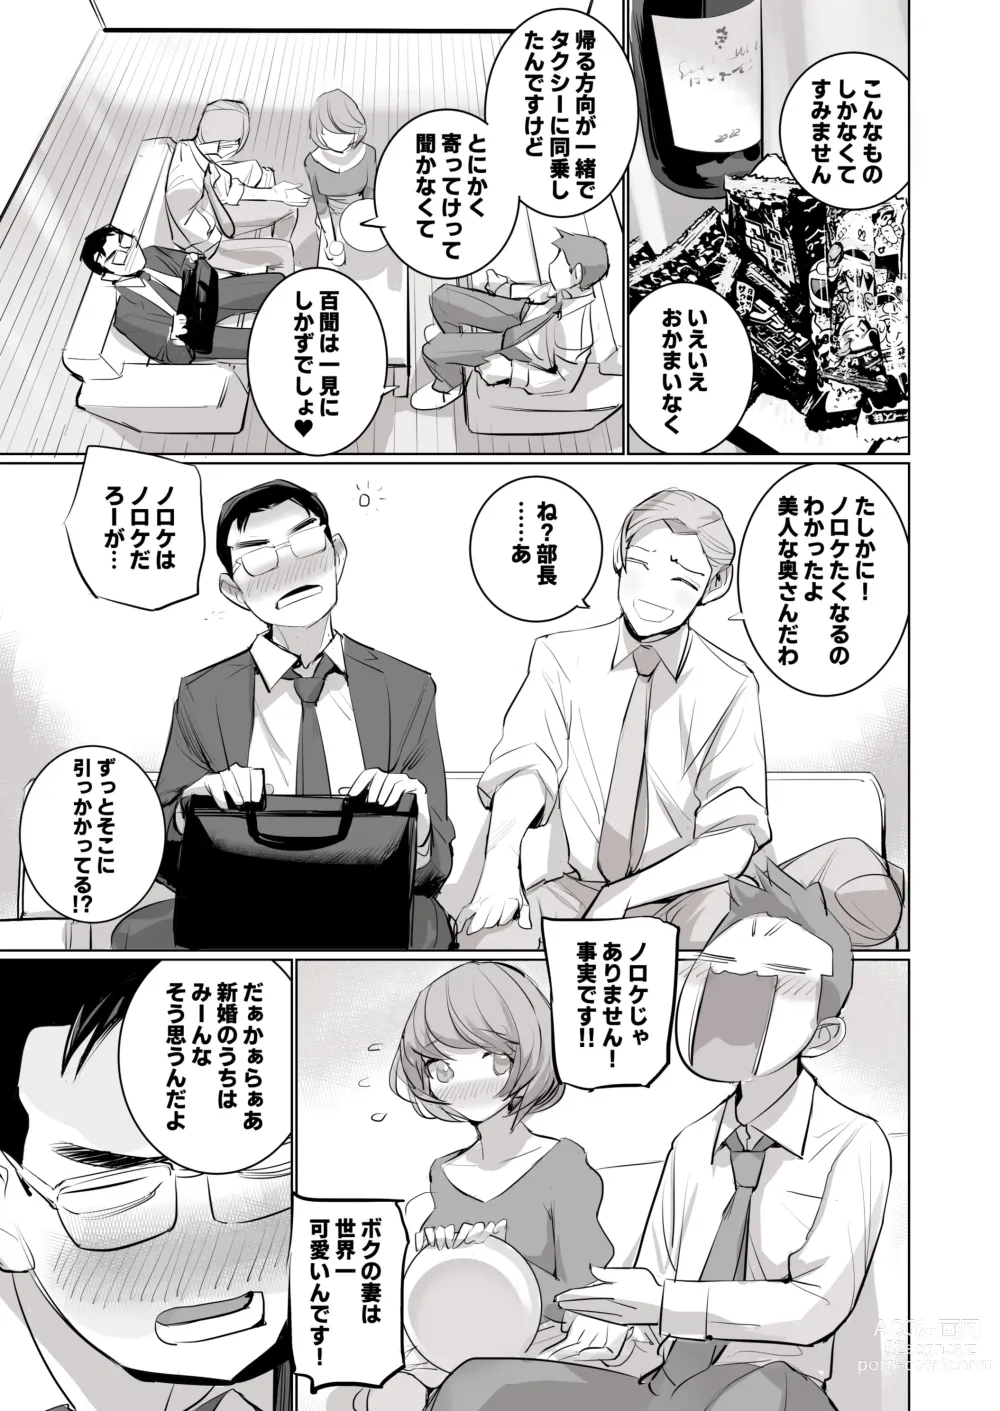 Page 29 of doujinshi 人気同人作家の妻とラブラブ新婚性活でも妻が好きすぎてNTRしてしまうボクなんです